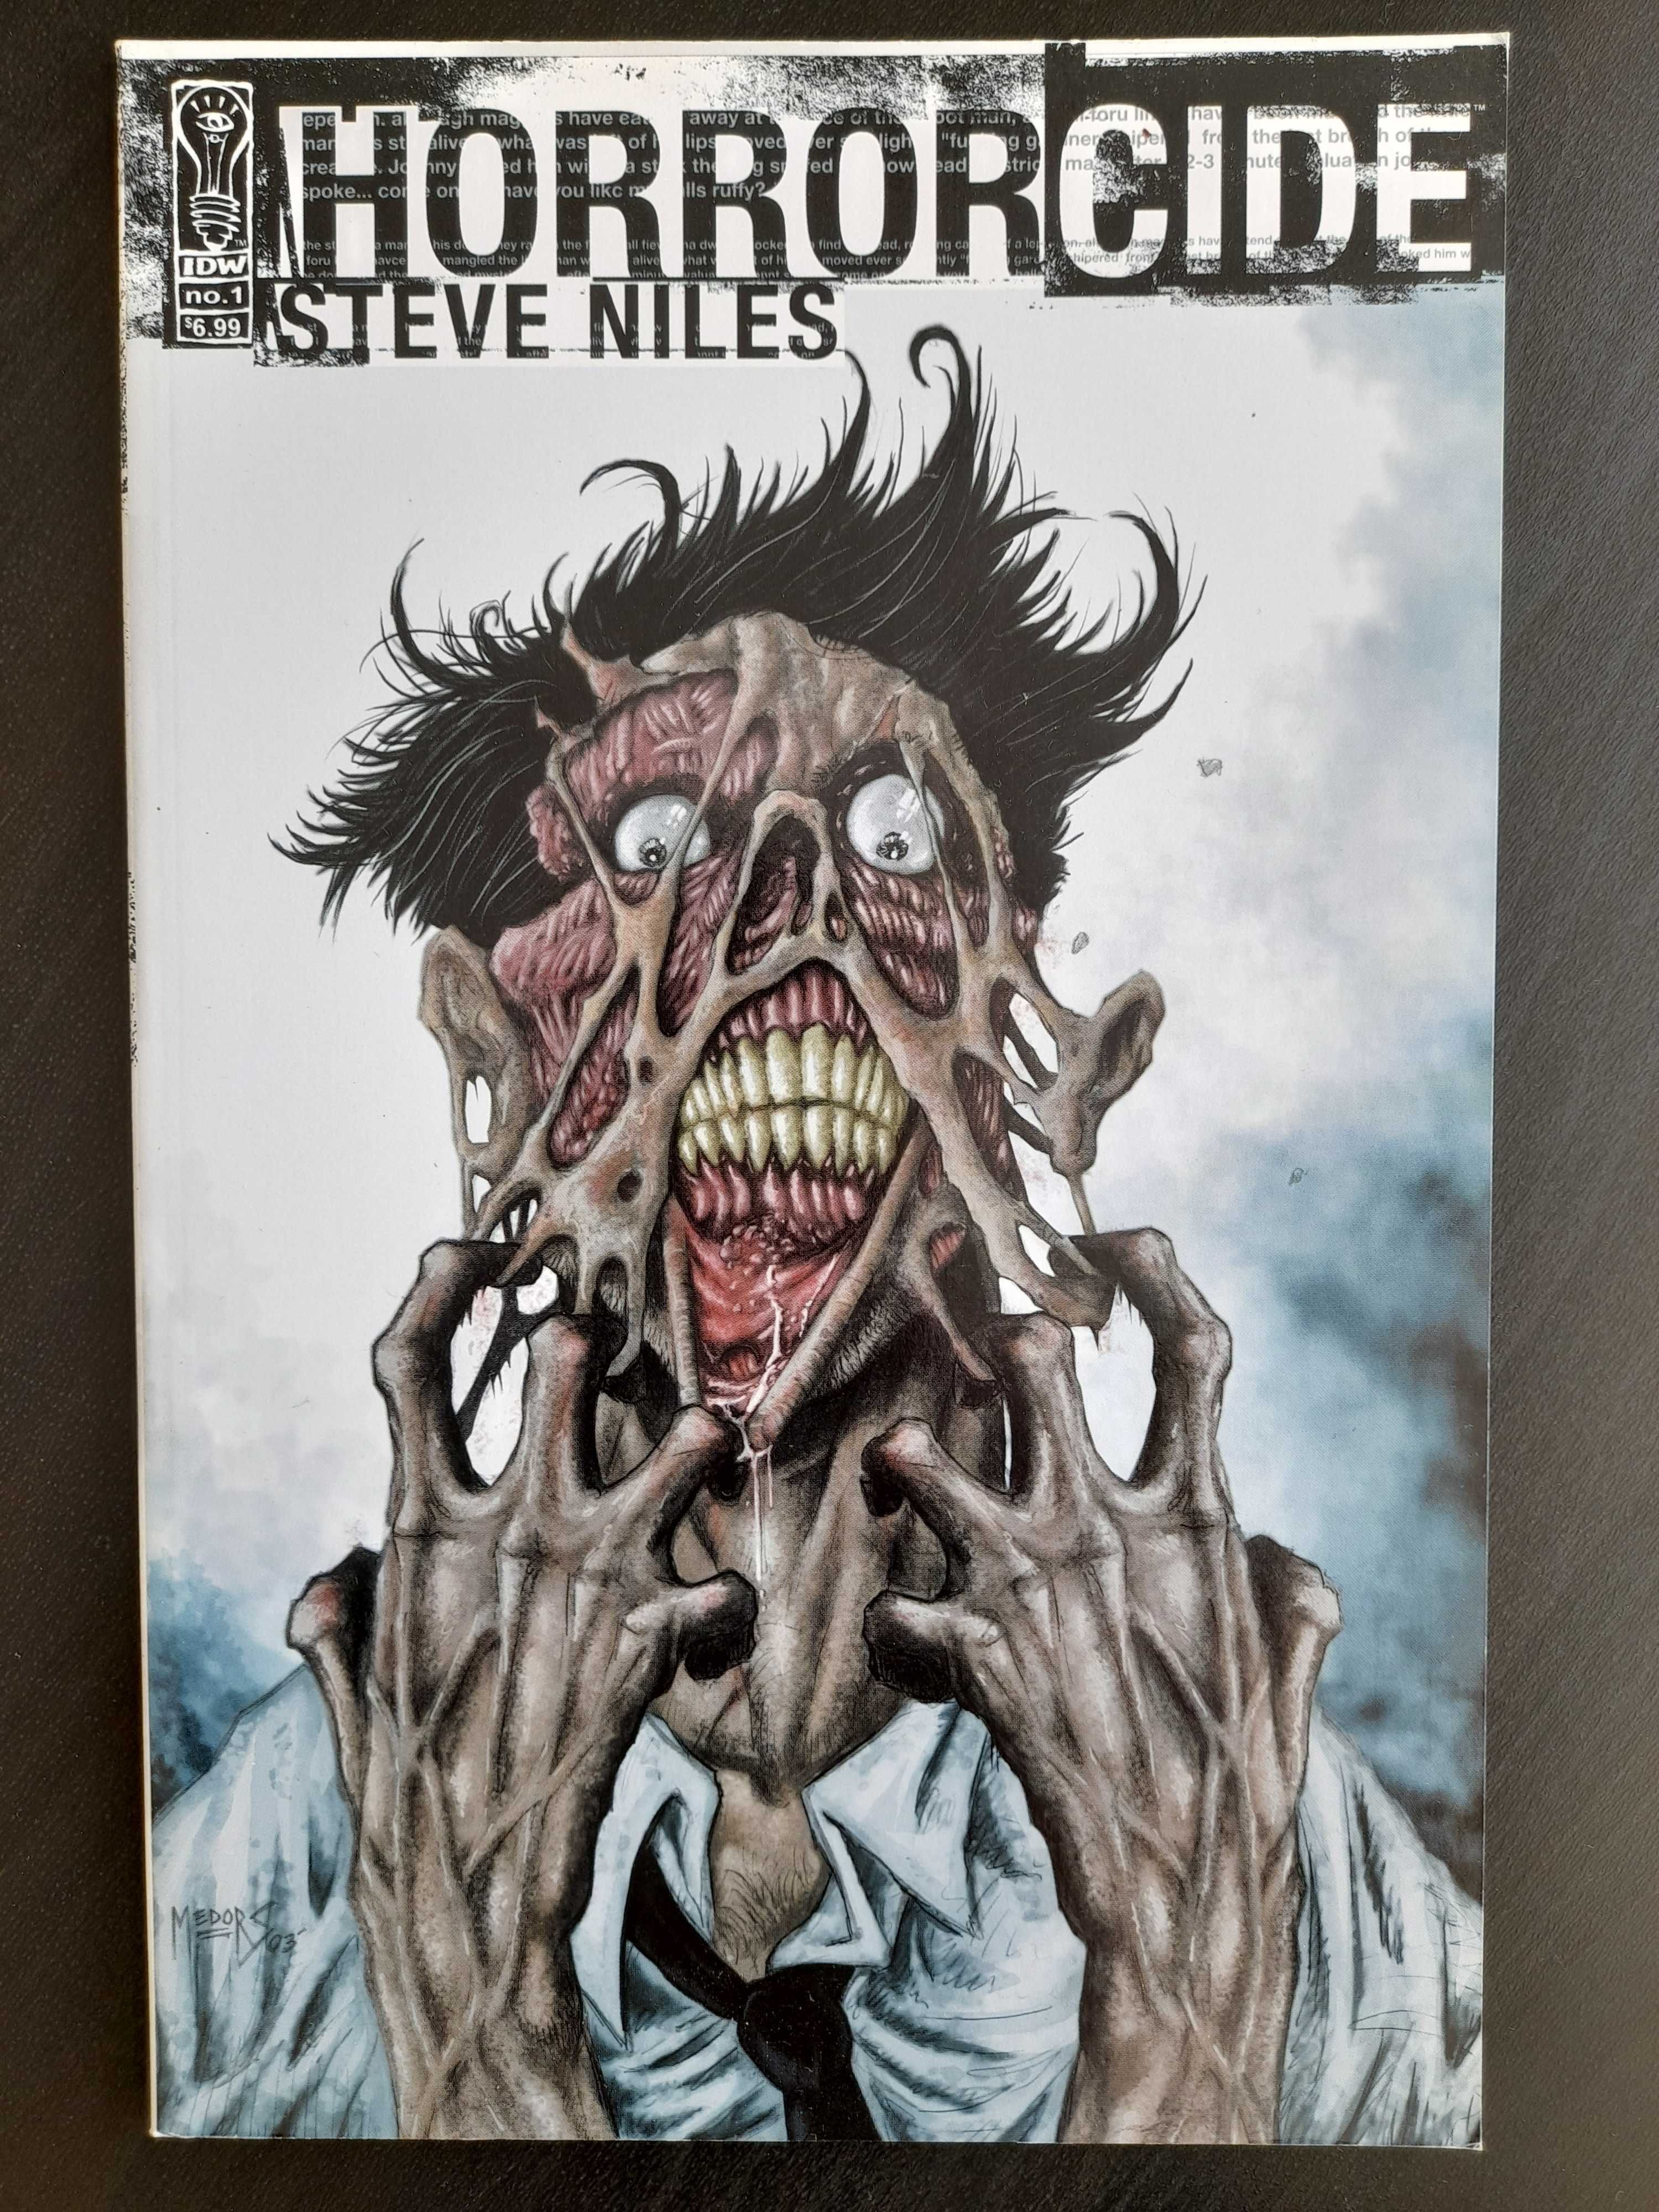 Horrorcide, Steve Niles